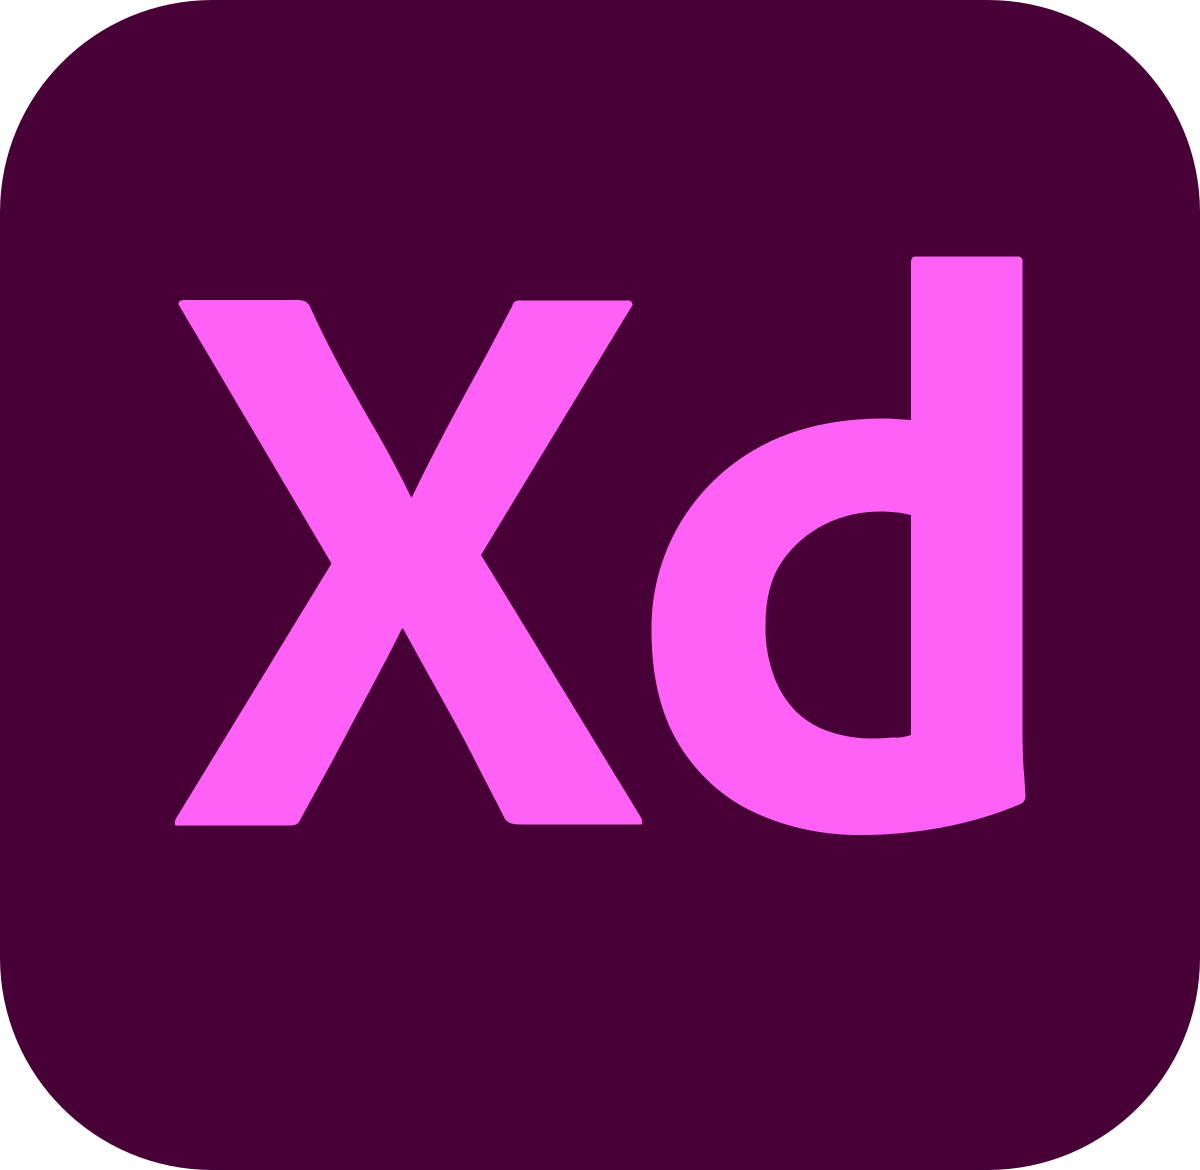 Adobe Adobe XD logo